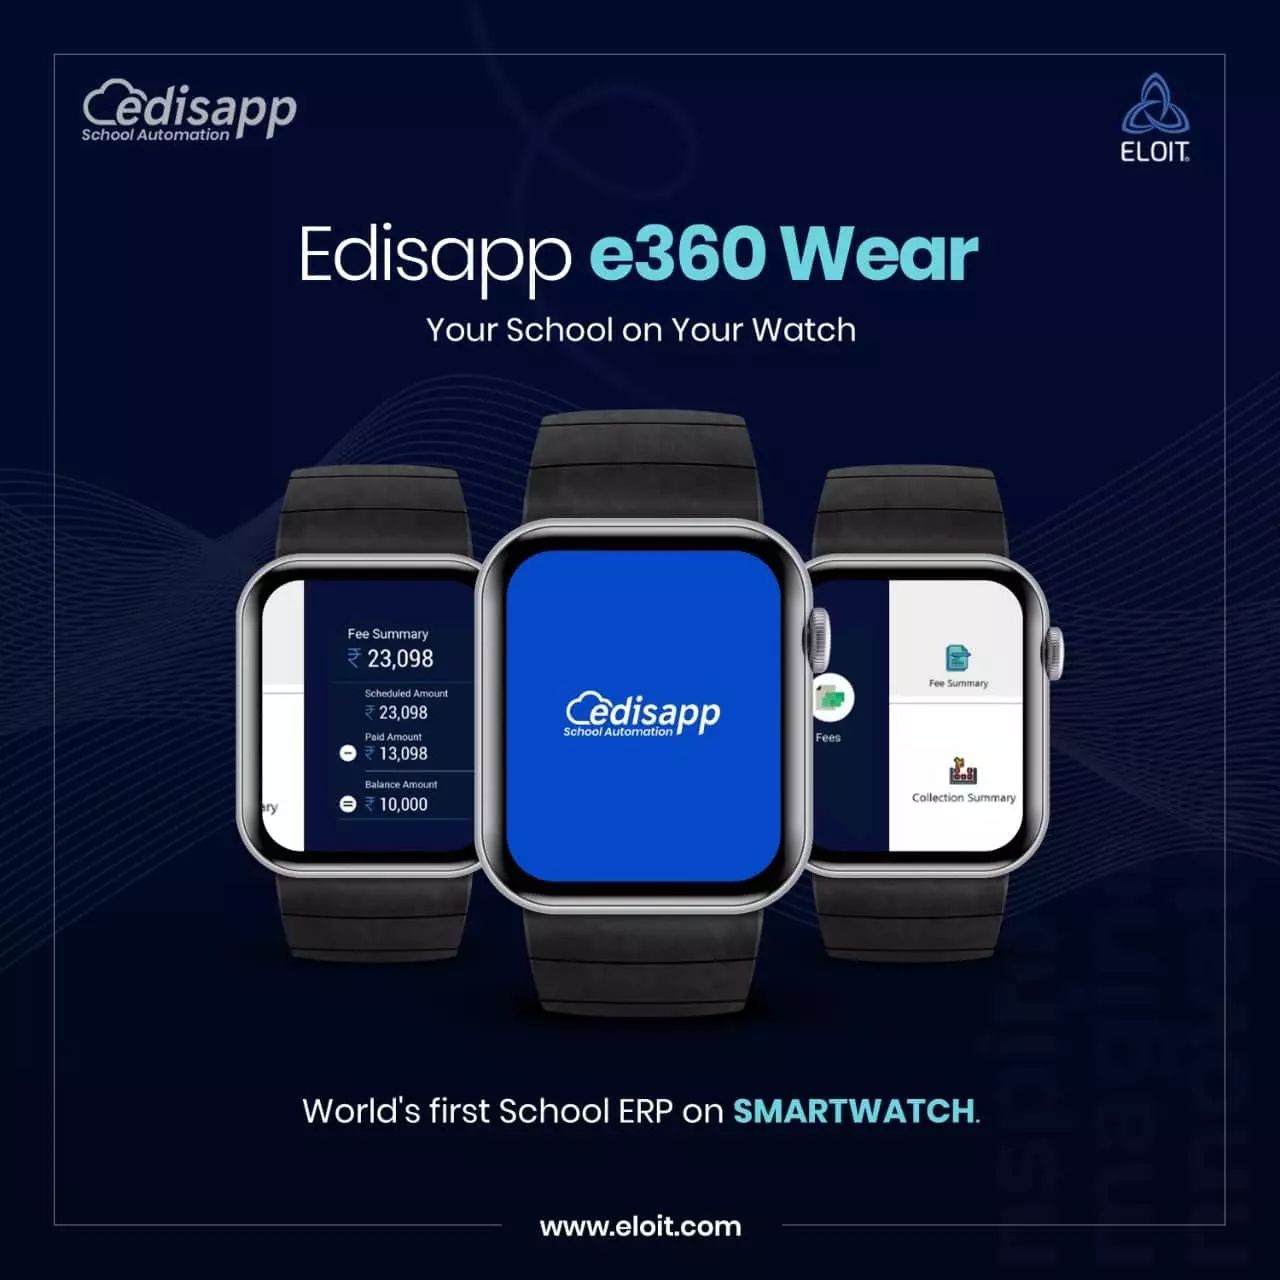 edisapp e360 wear